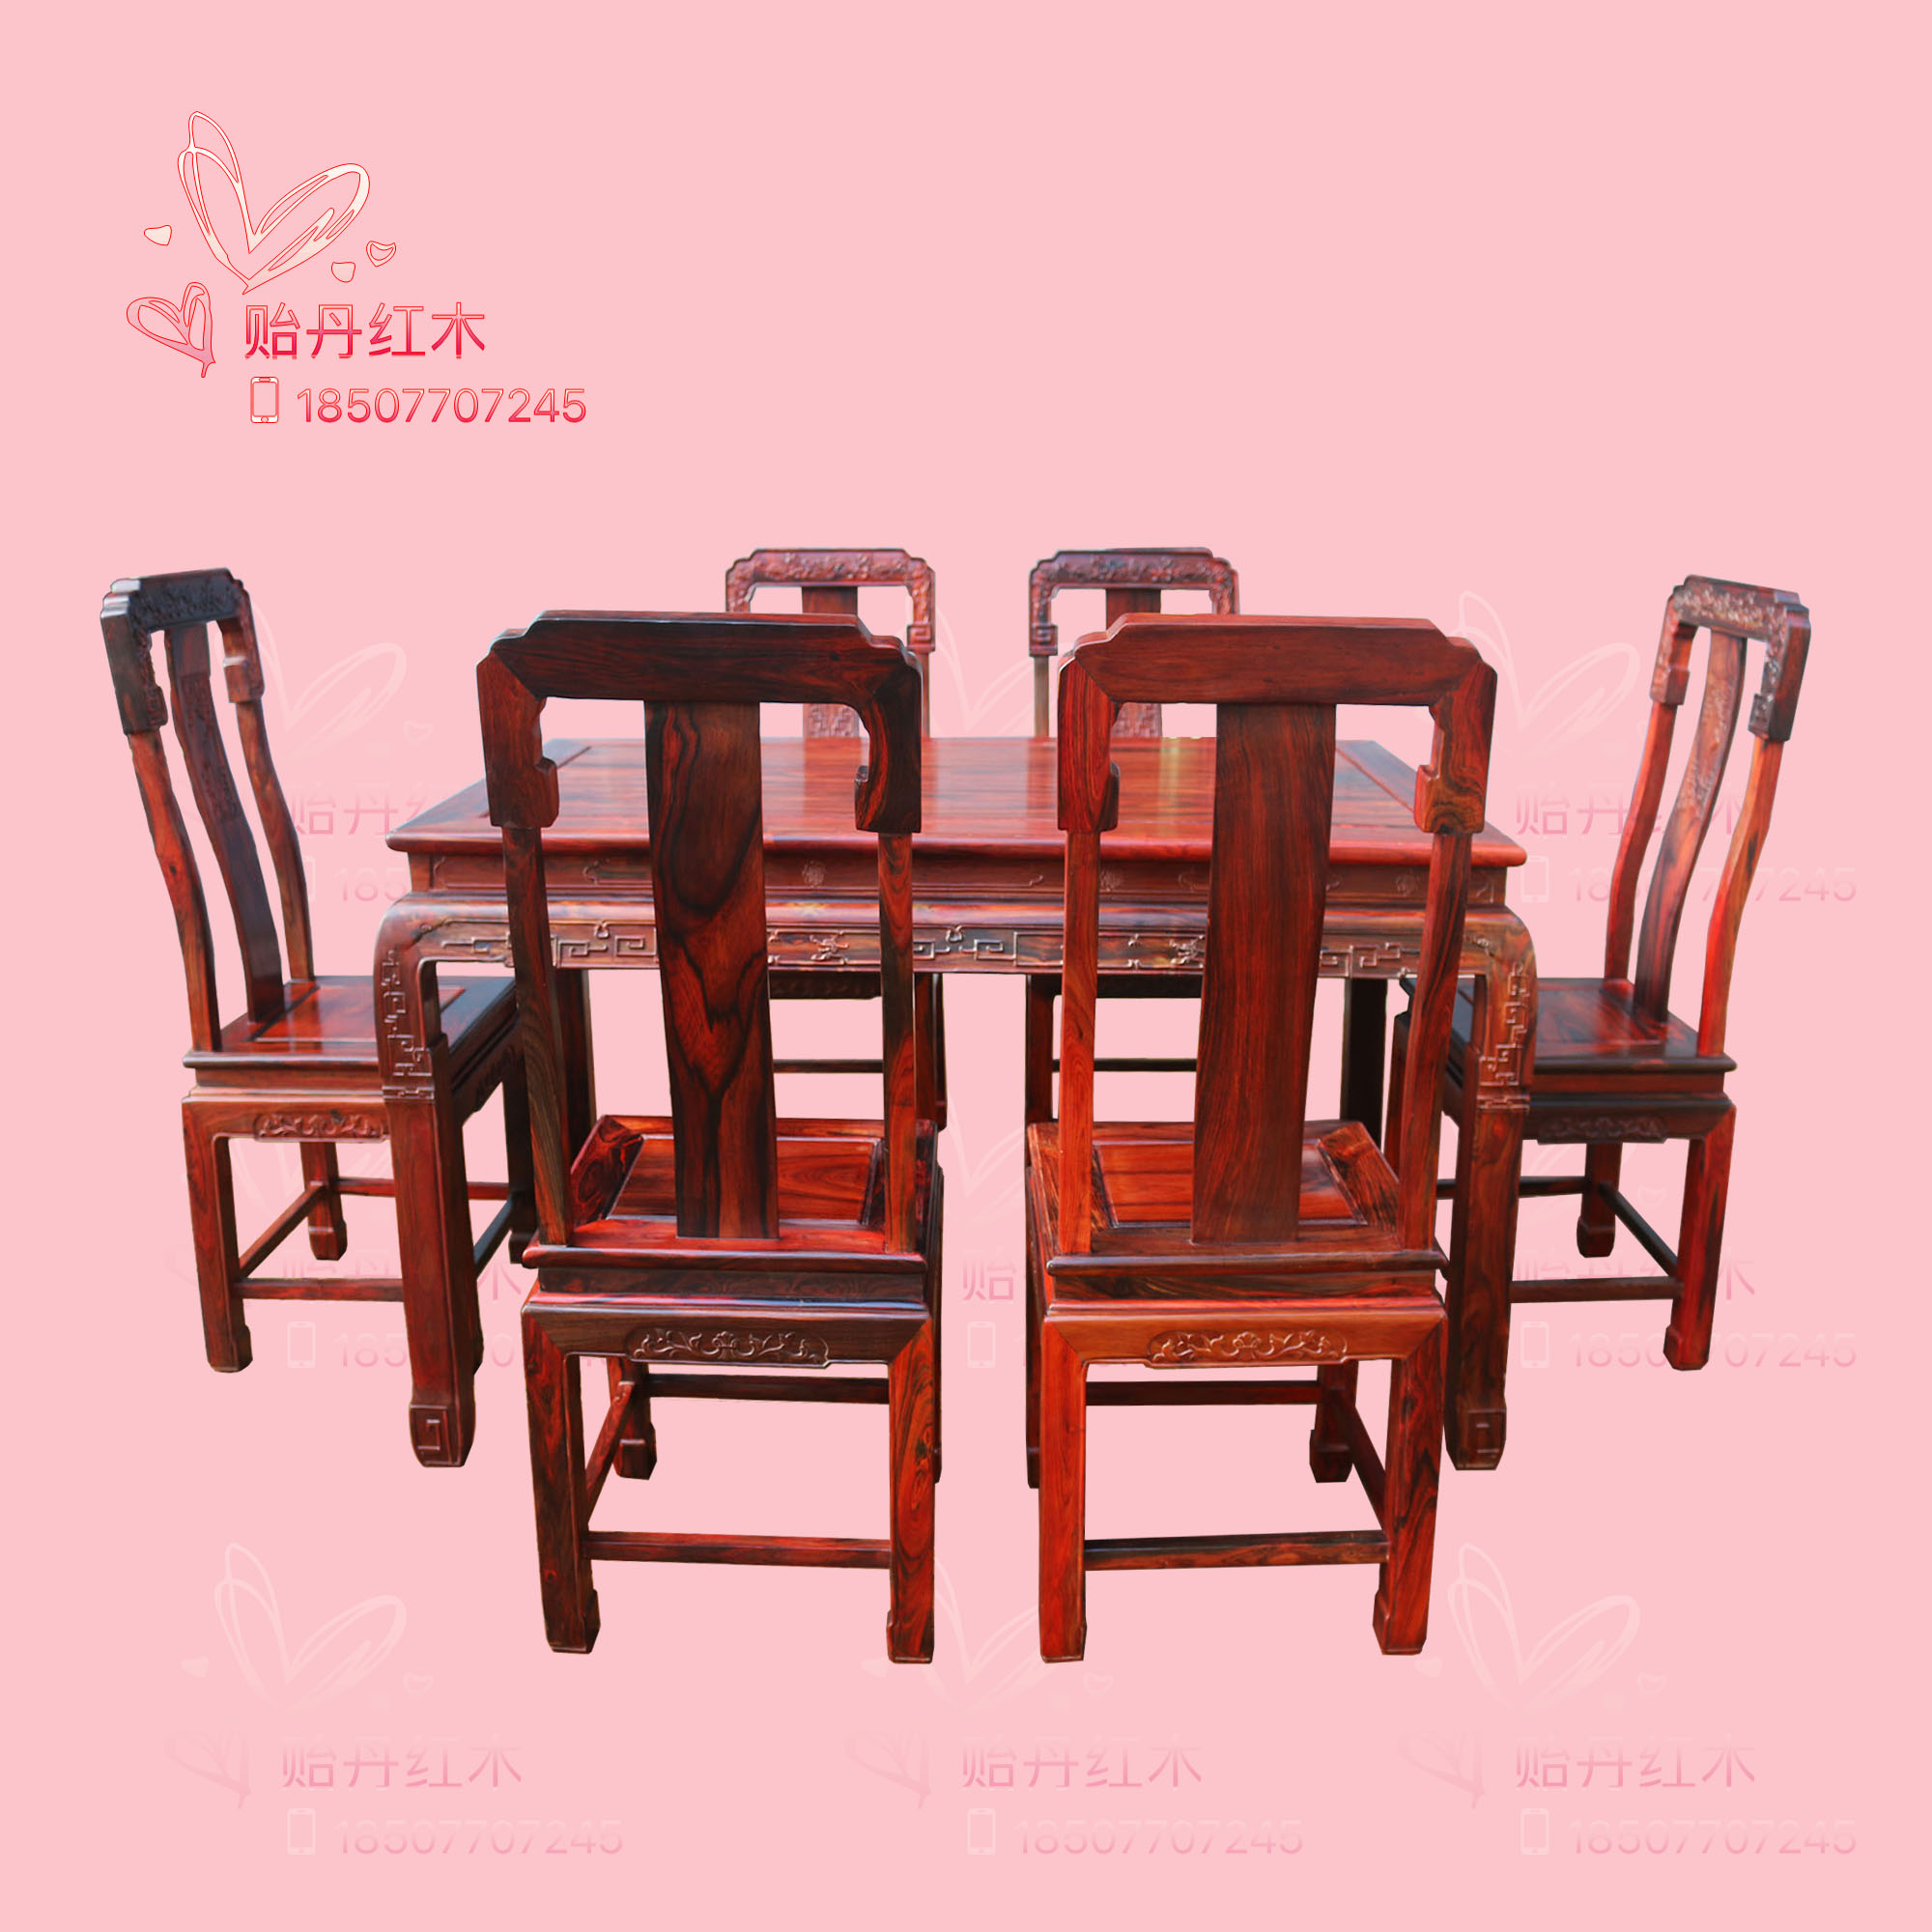 老挝大红酸枝餐桌 交趾黄檀饭台七件套 精雕老红木家具餐桌官帽椅